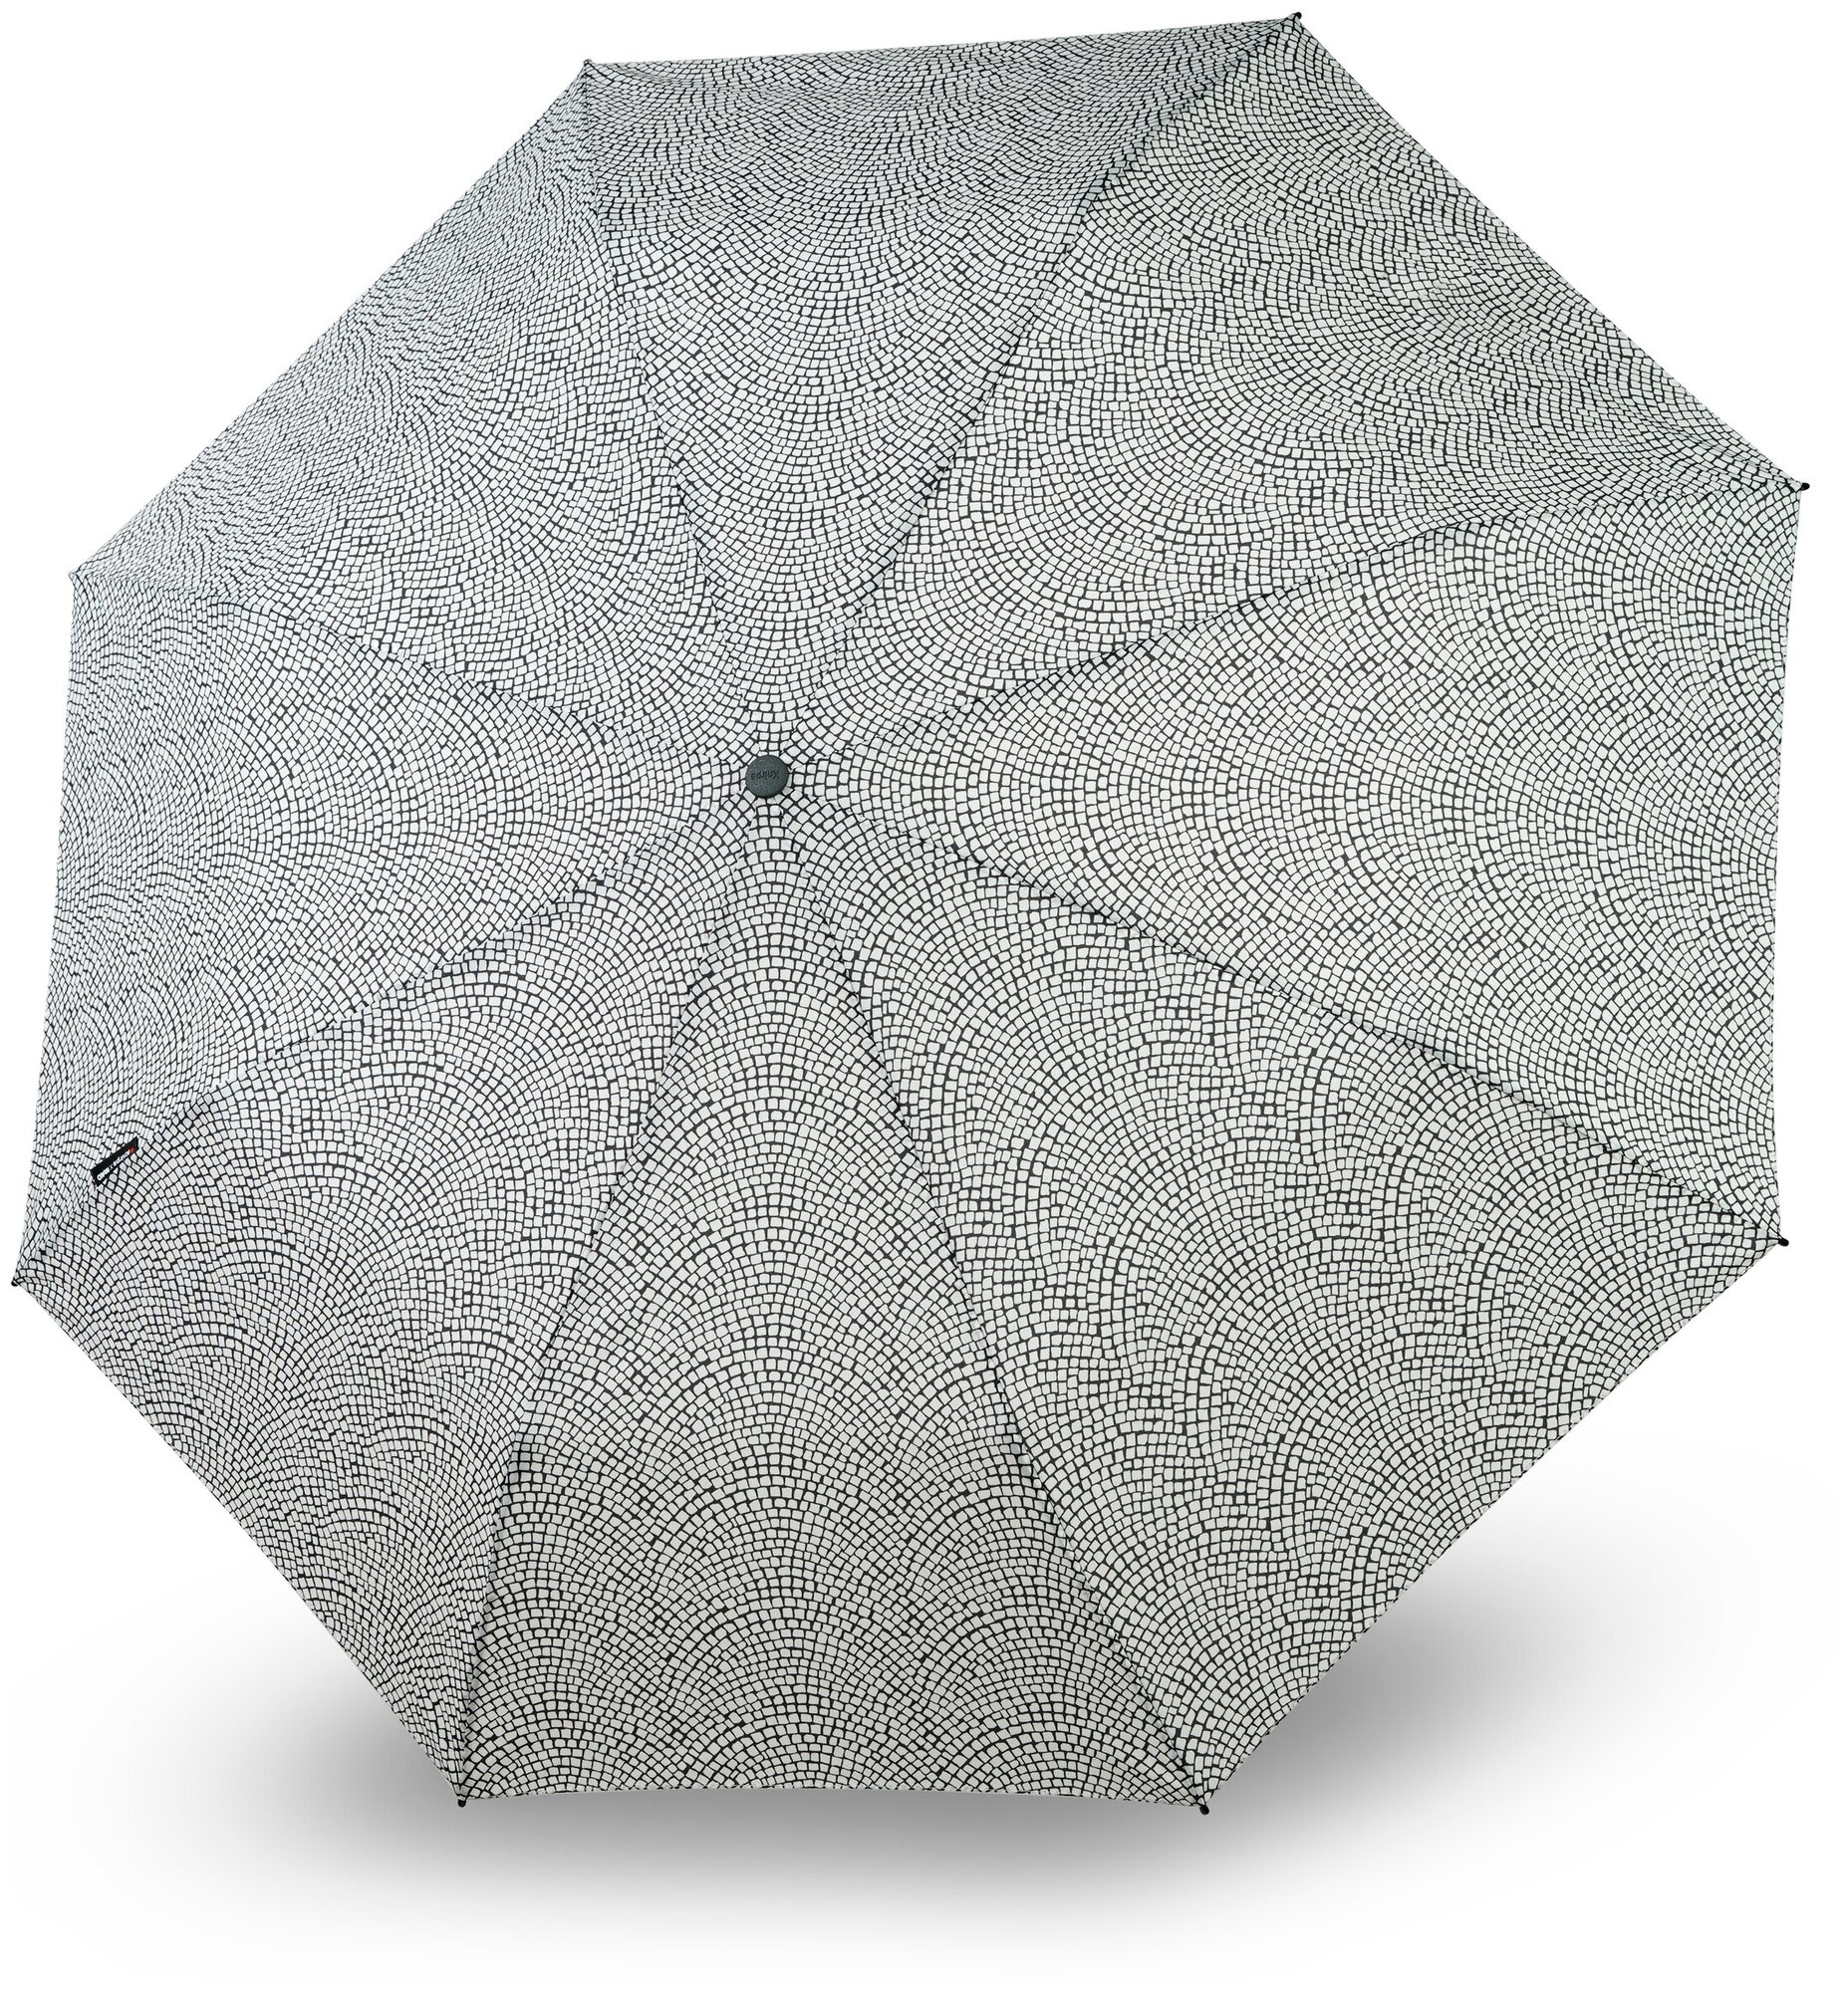 Зонт женский автомат, Knirps T.201, складной, 3 сложения, 8 спиц, купол 99 см, зонт от солнца облегченный, антиветер